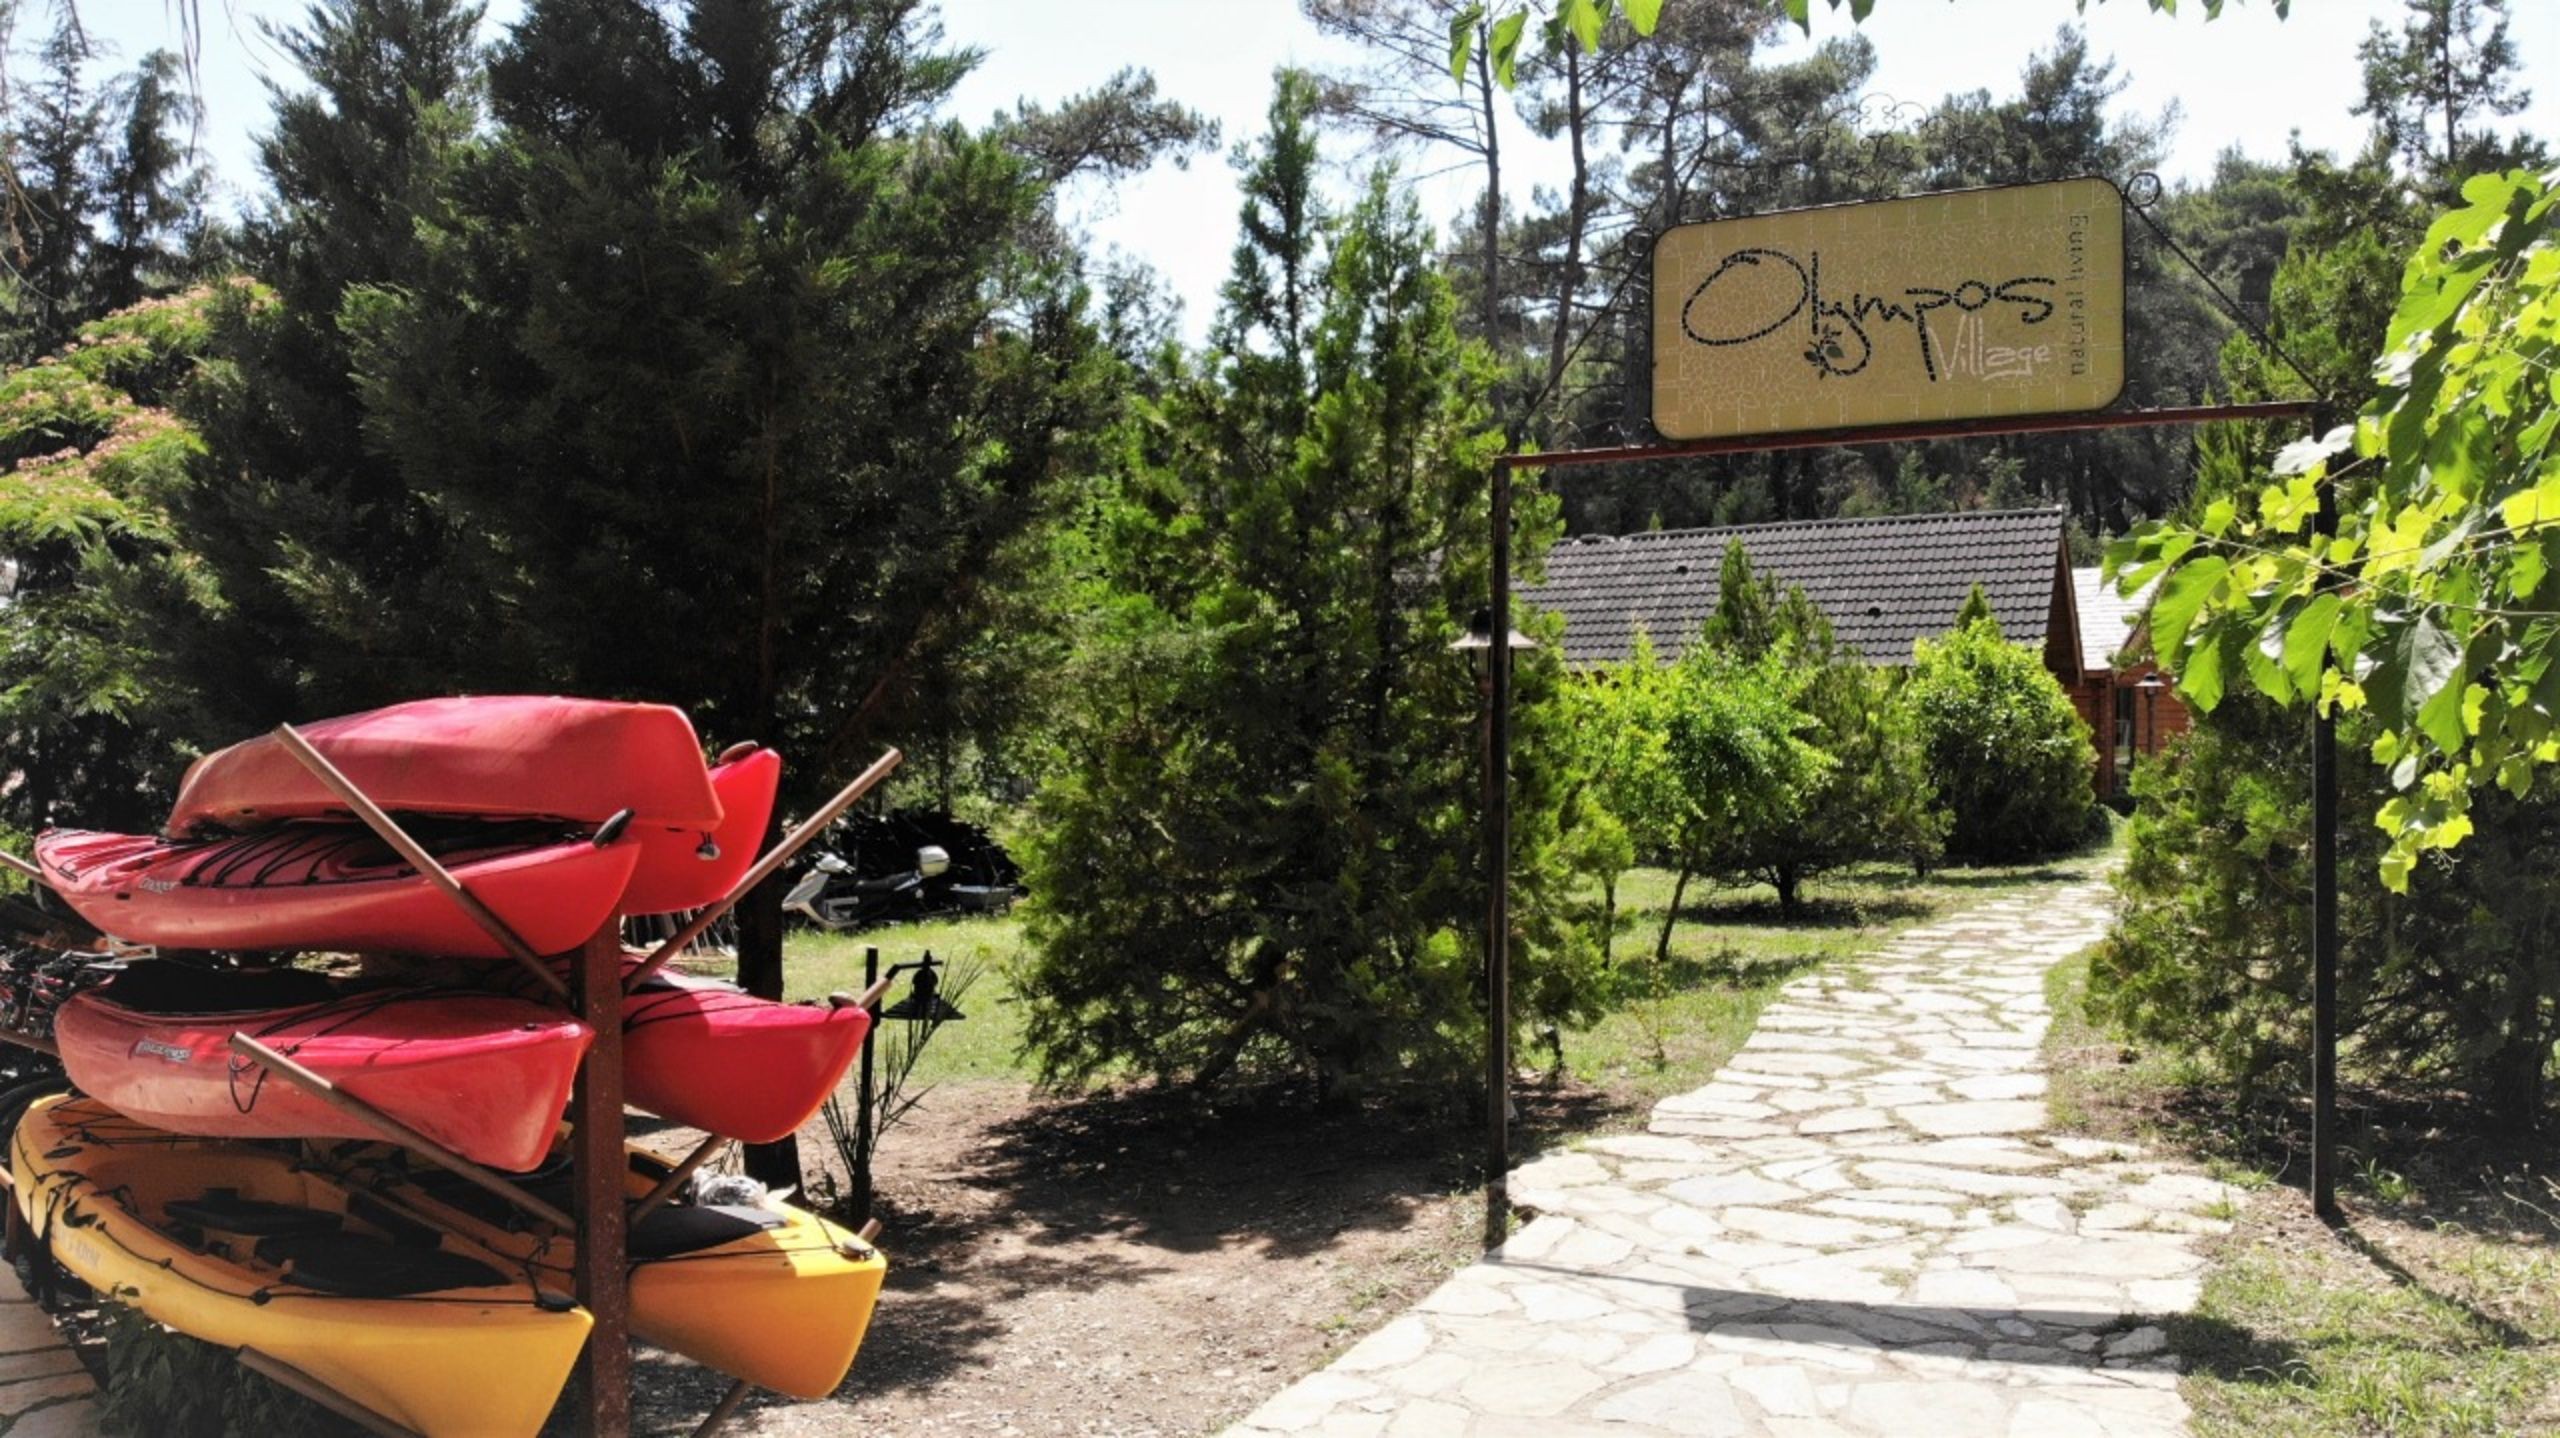 Olympos Village Hotel